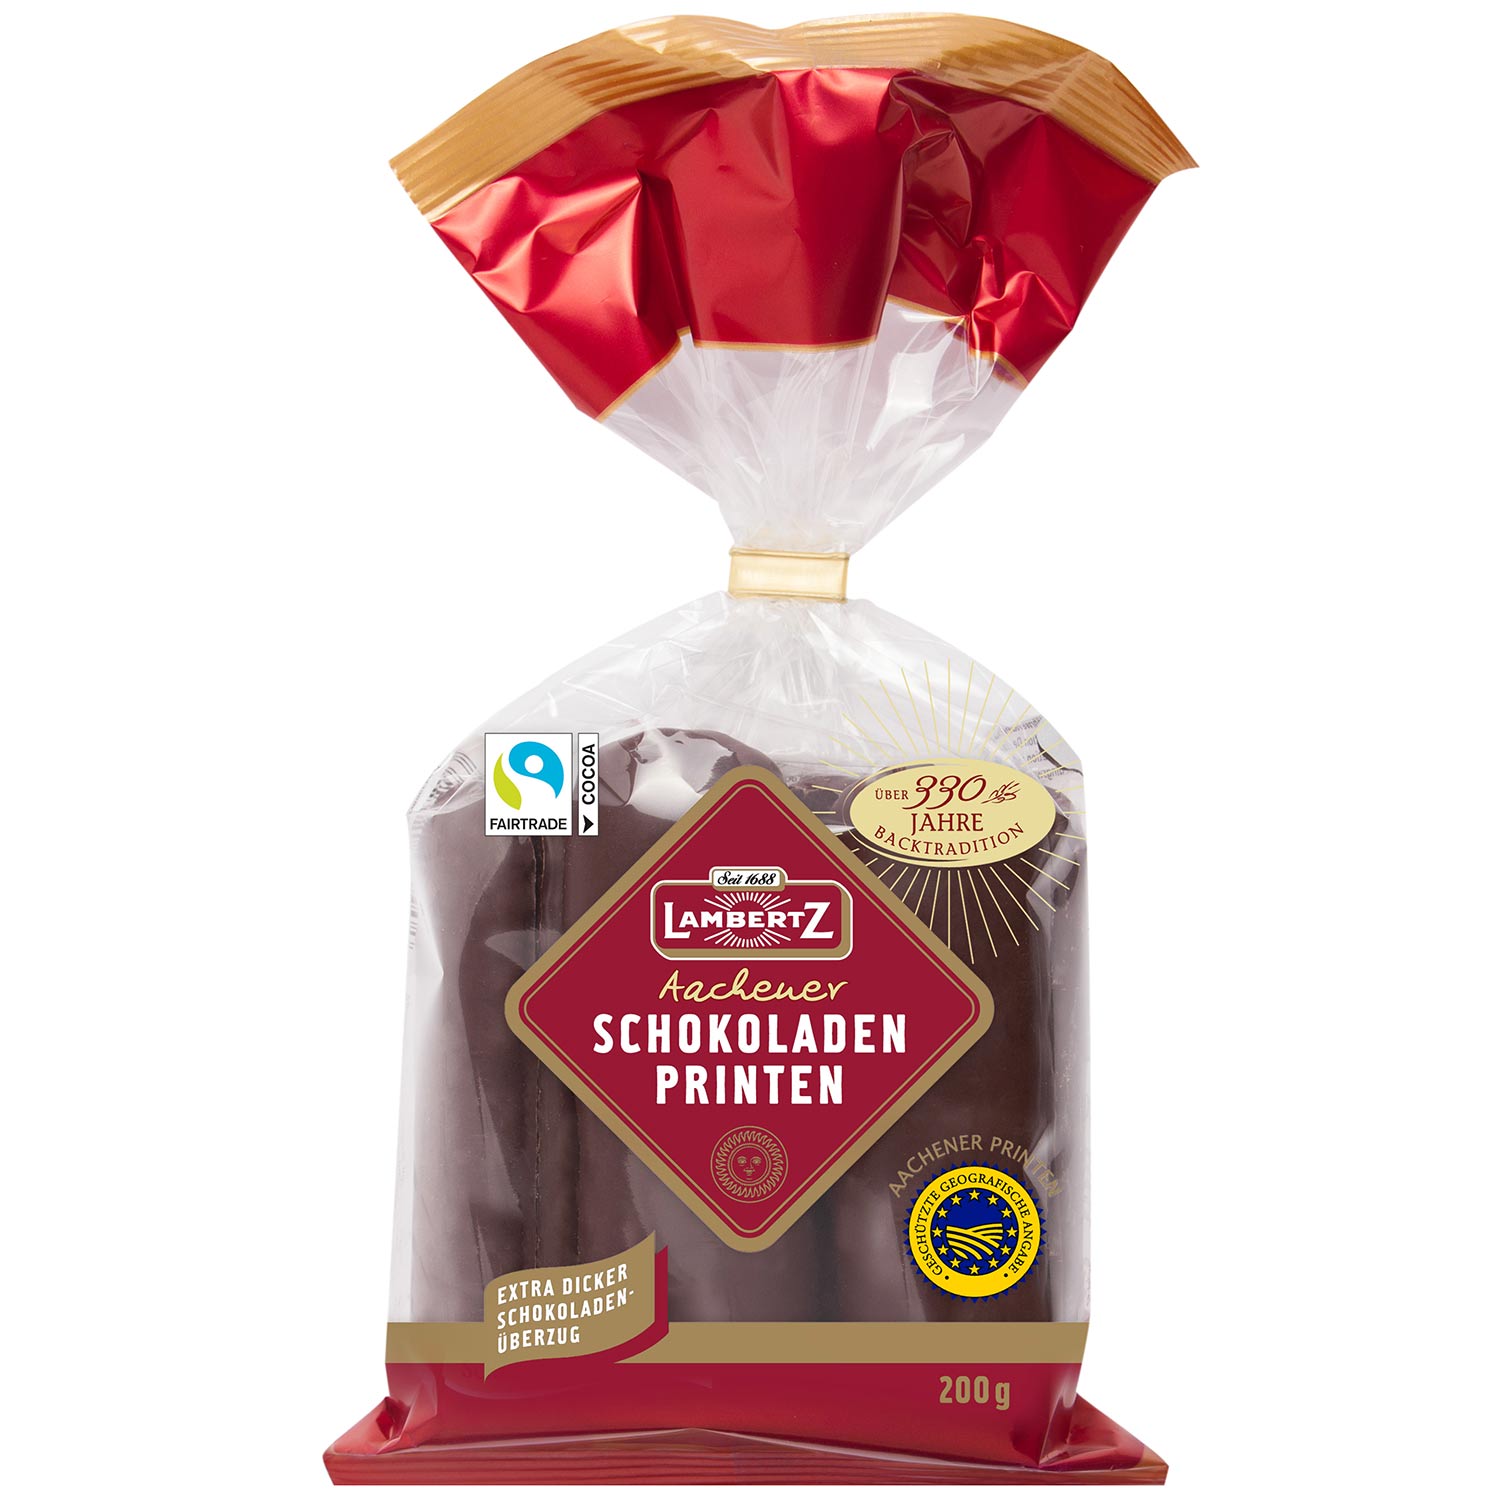 Lambertz Aachener Schokoladen Printen 200g | Online kaufen im World of ...